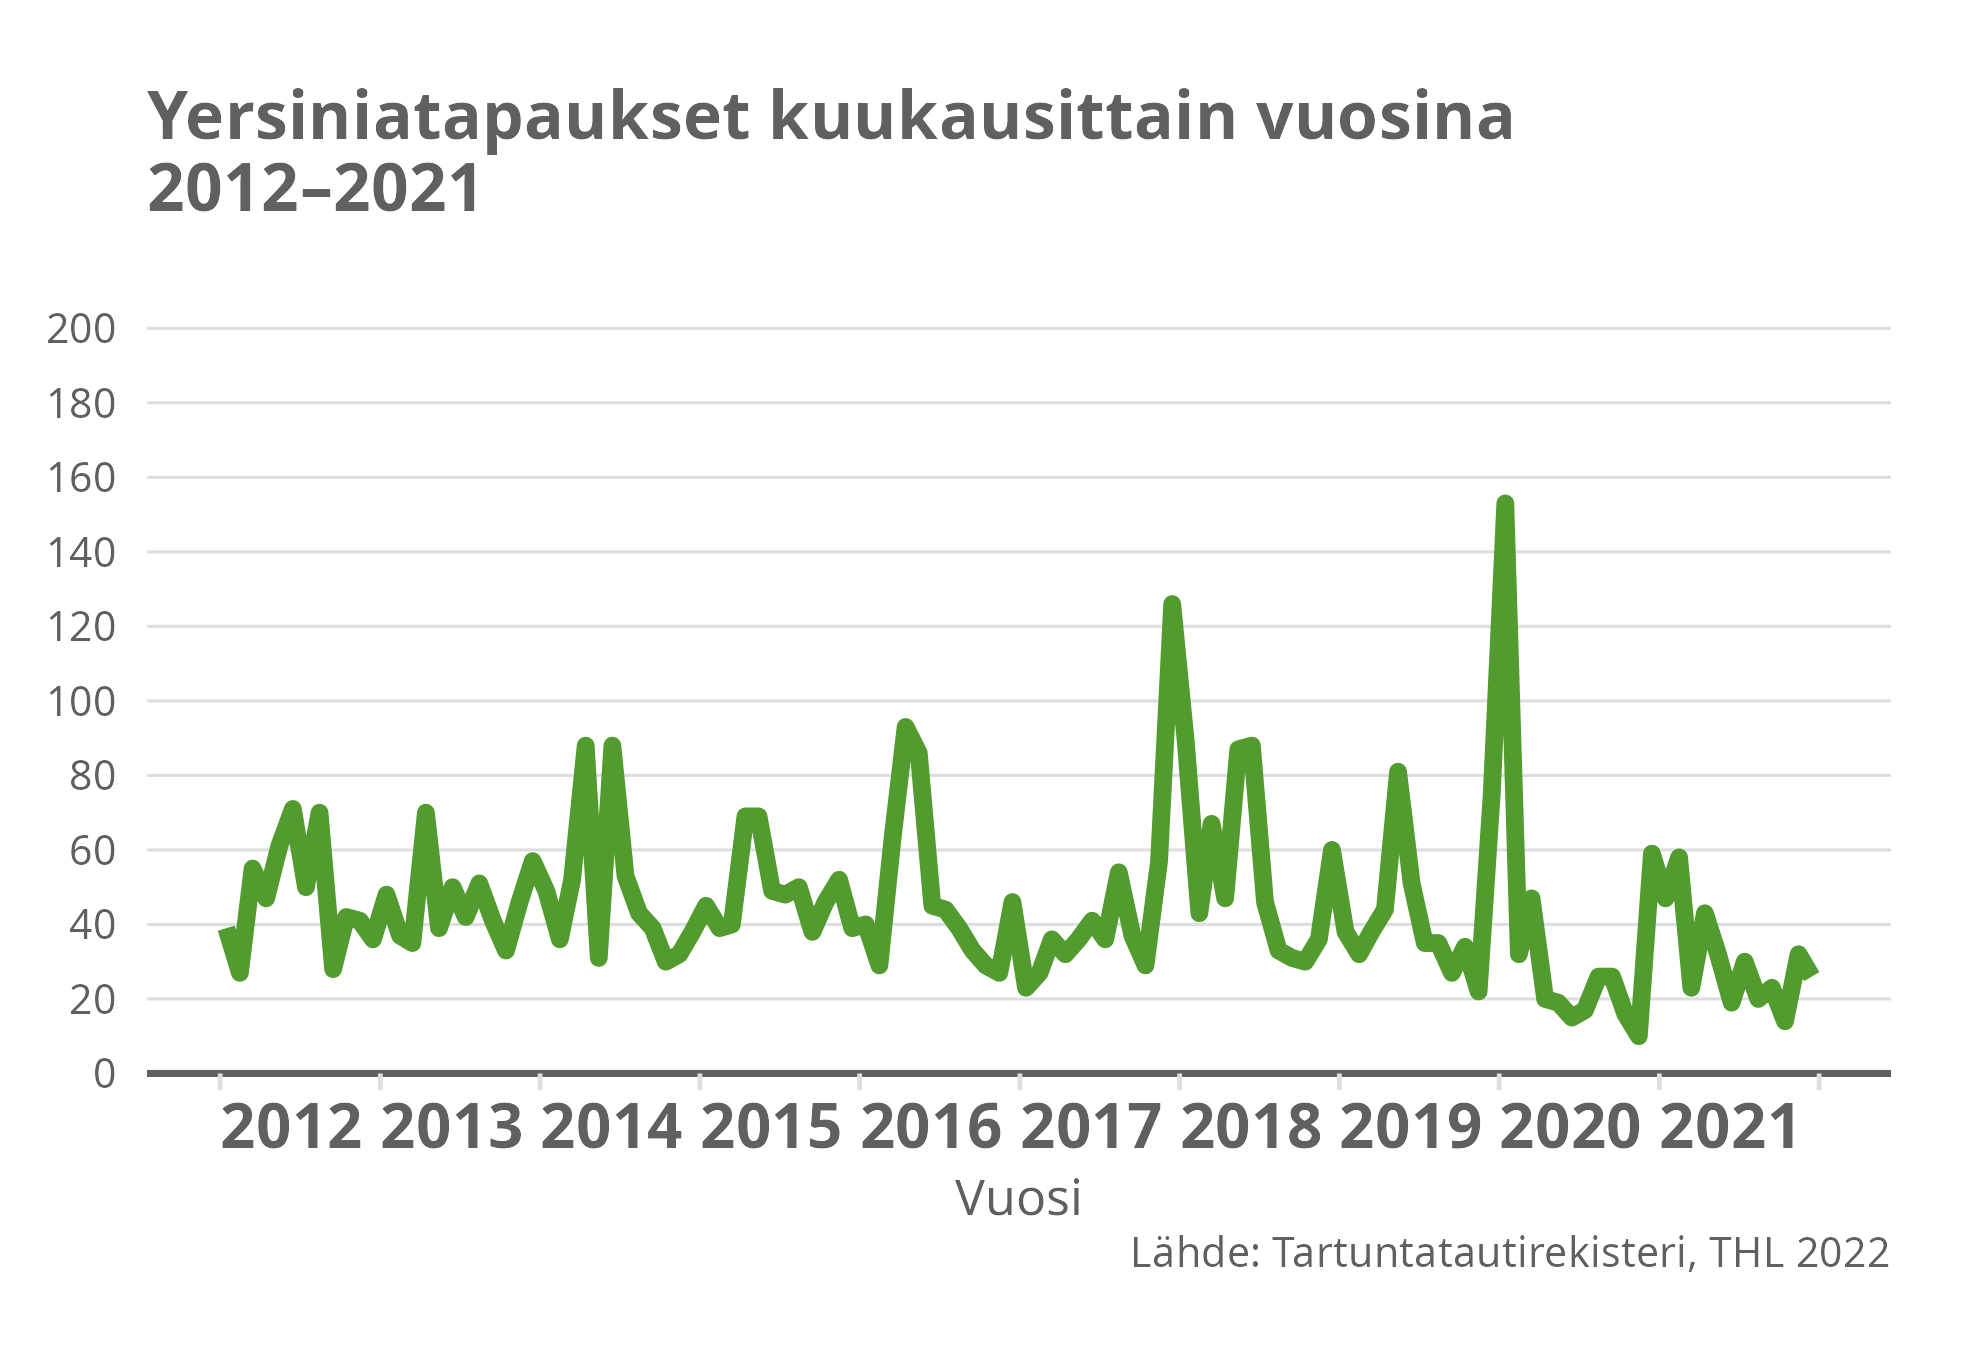 Yersiniatapaukset kuukausittain vuosina 2012-2021.